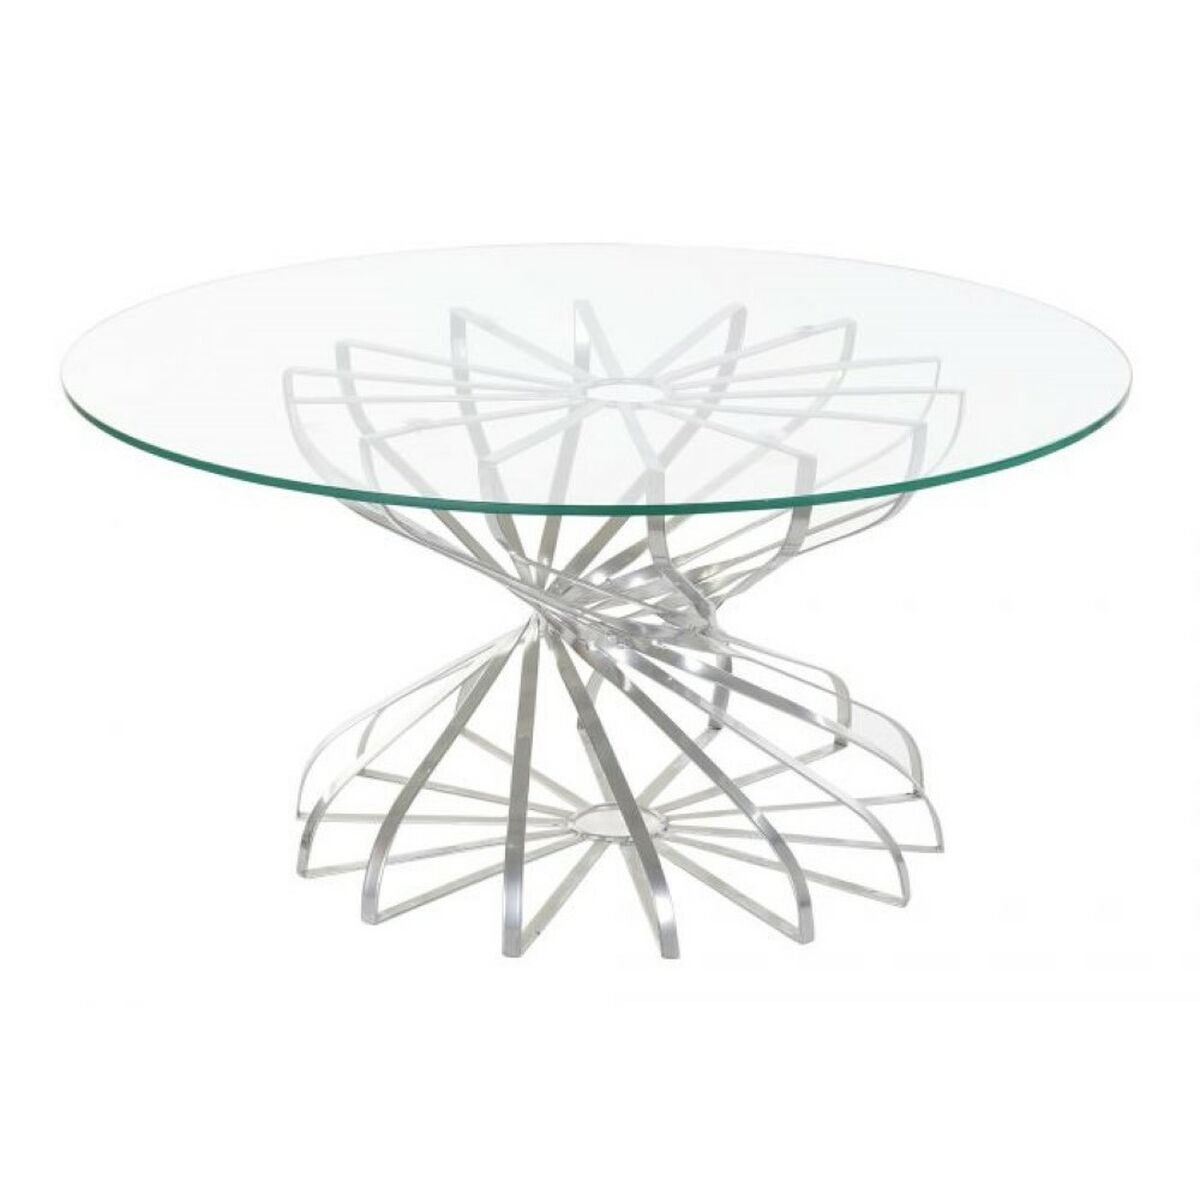 Viikon 30 tarjouksena verkkokaupassamme Korhone on Olohuoneen pöytä DKD Home Decor Hopeinen Kristalli Rauta 81 x 81 x 38 cm